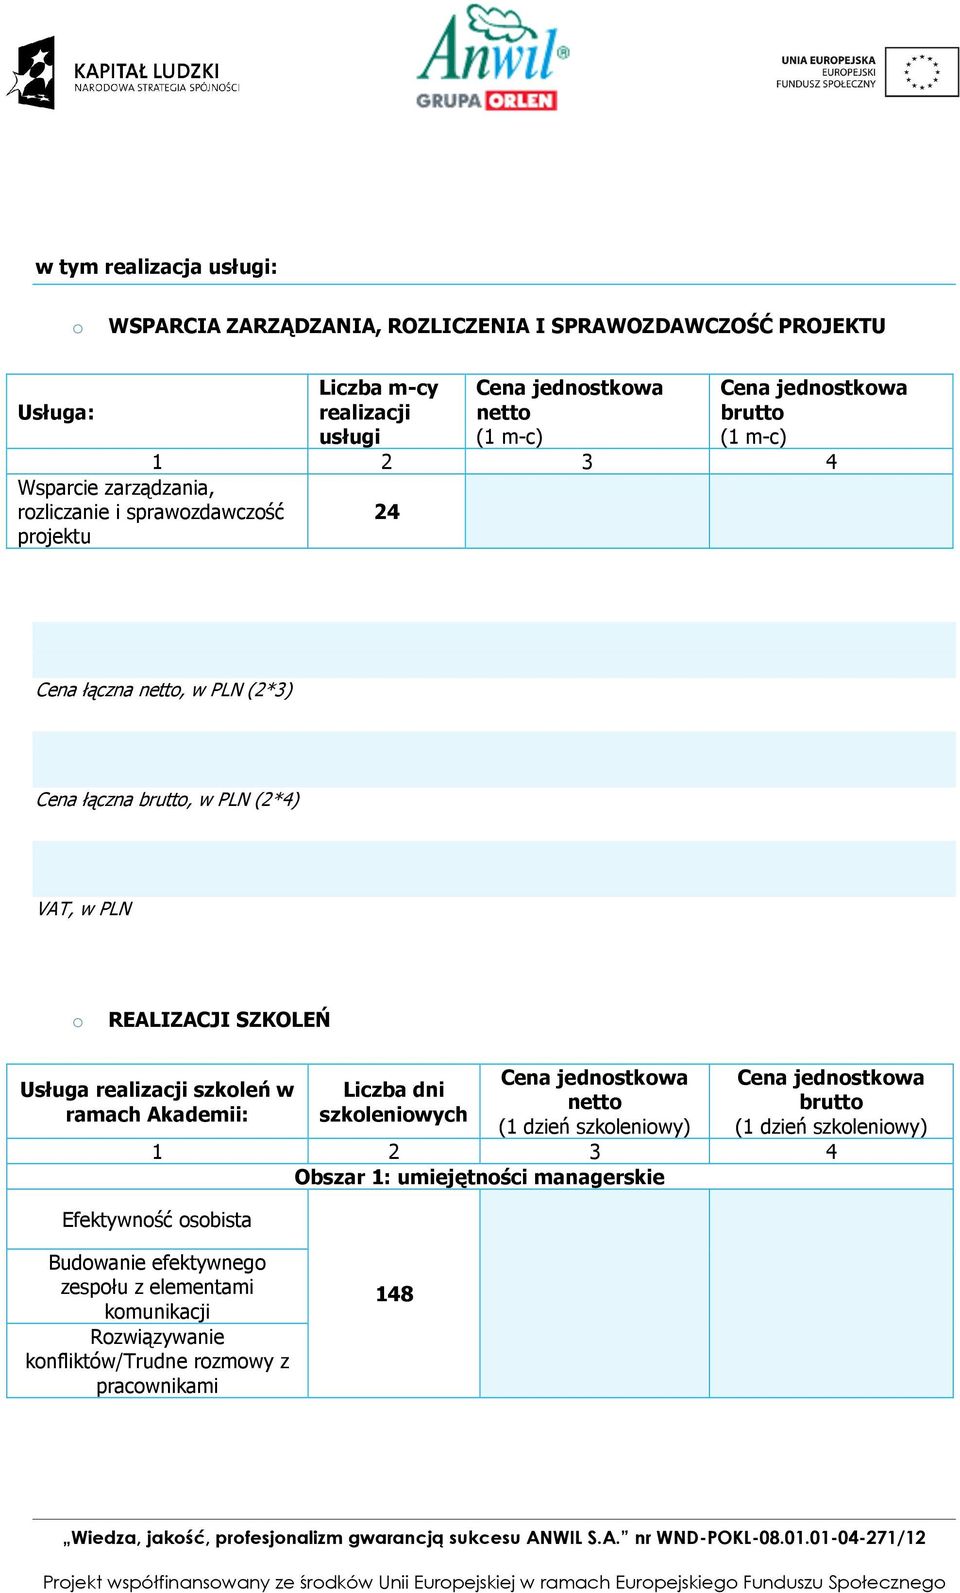 PLN REALIZACJI SZKOLEŃ Usługa realizacji szkleń w ramach Akademii: Liczba dni szkleniwych Cena jednstkwa nett (1 dzień szkleniwy) Cena jednstkwa brutt (1 dzień